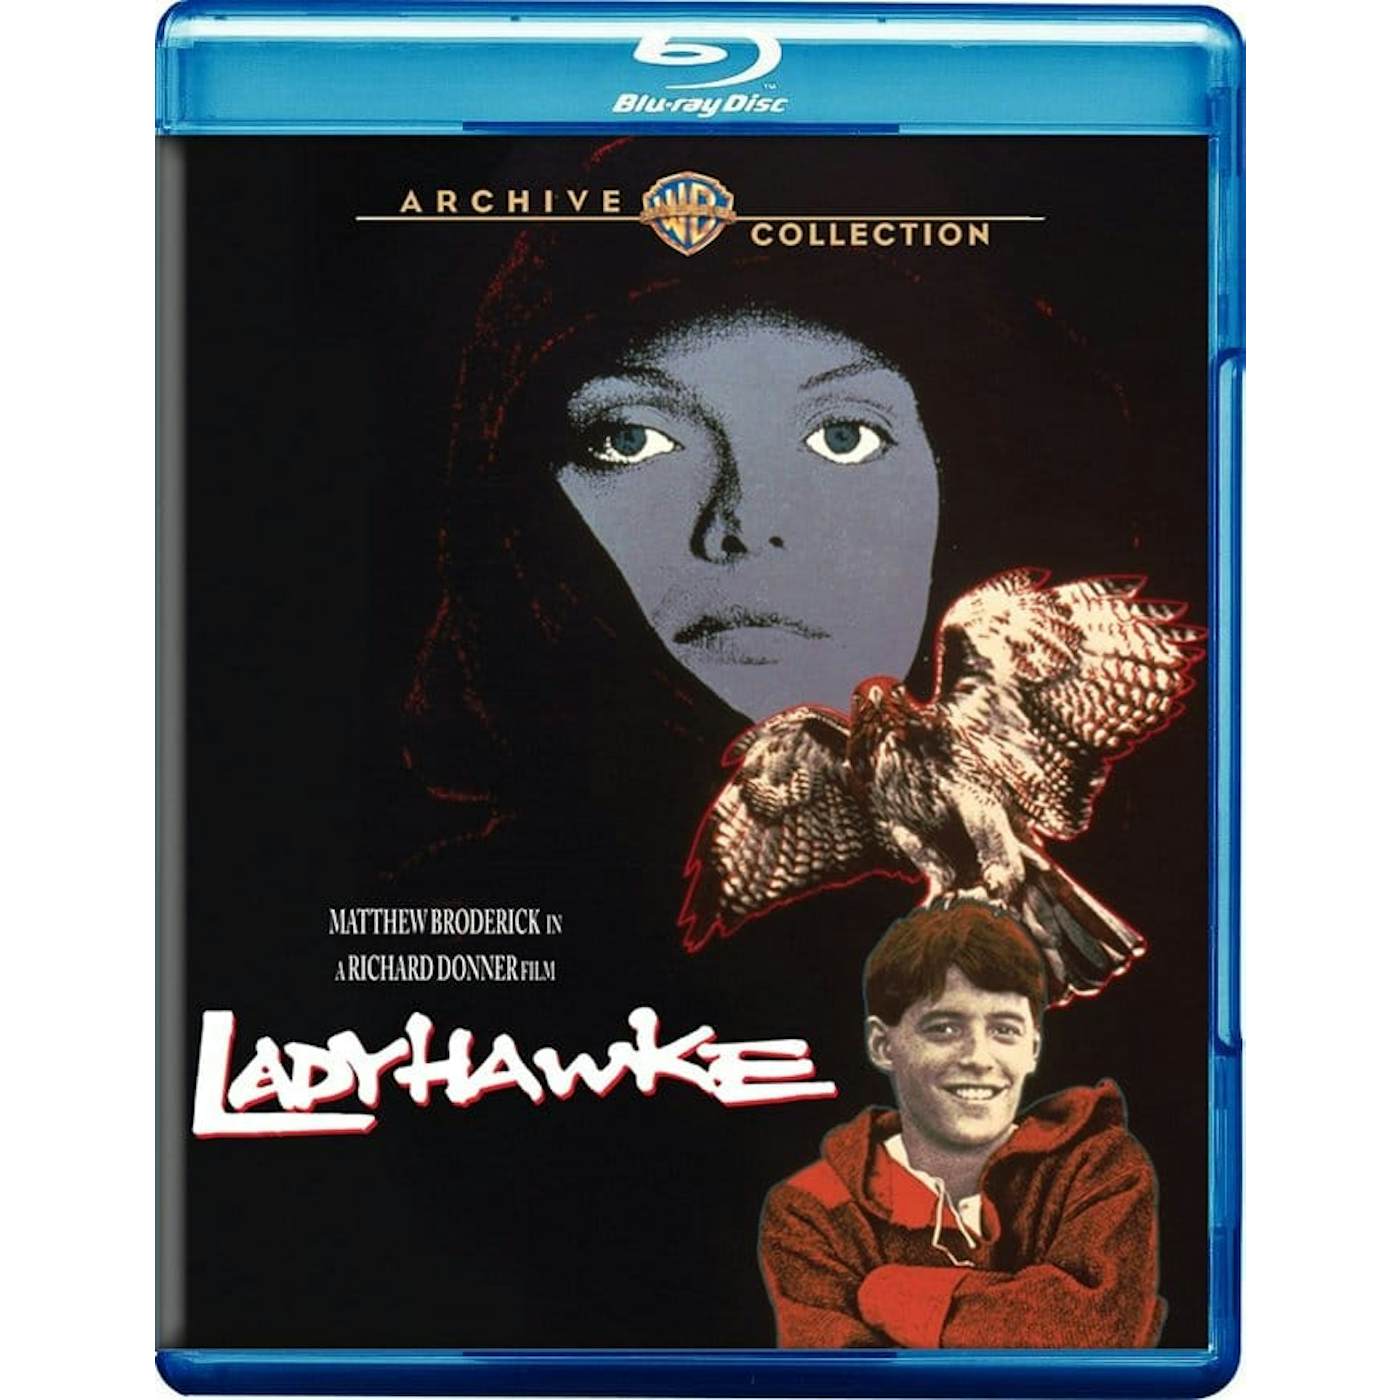 LADYHAWKE Blu-ray